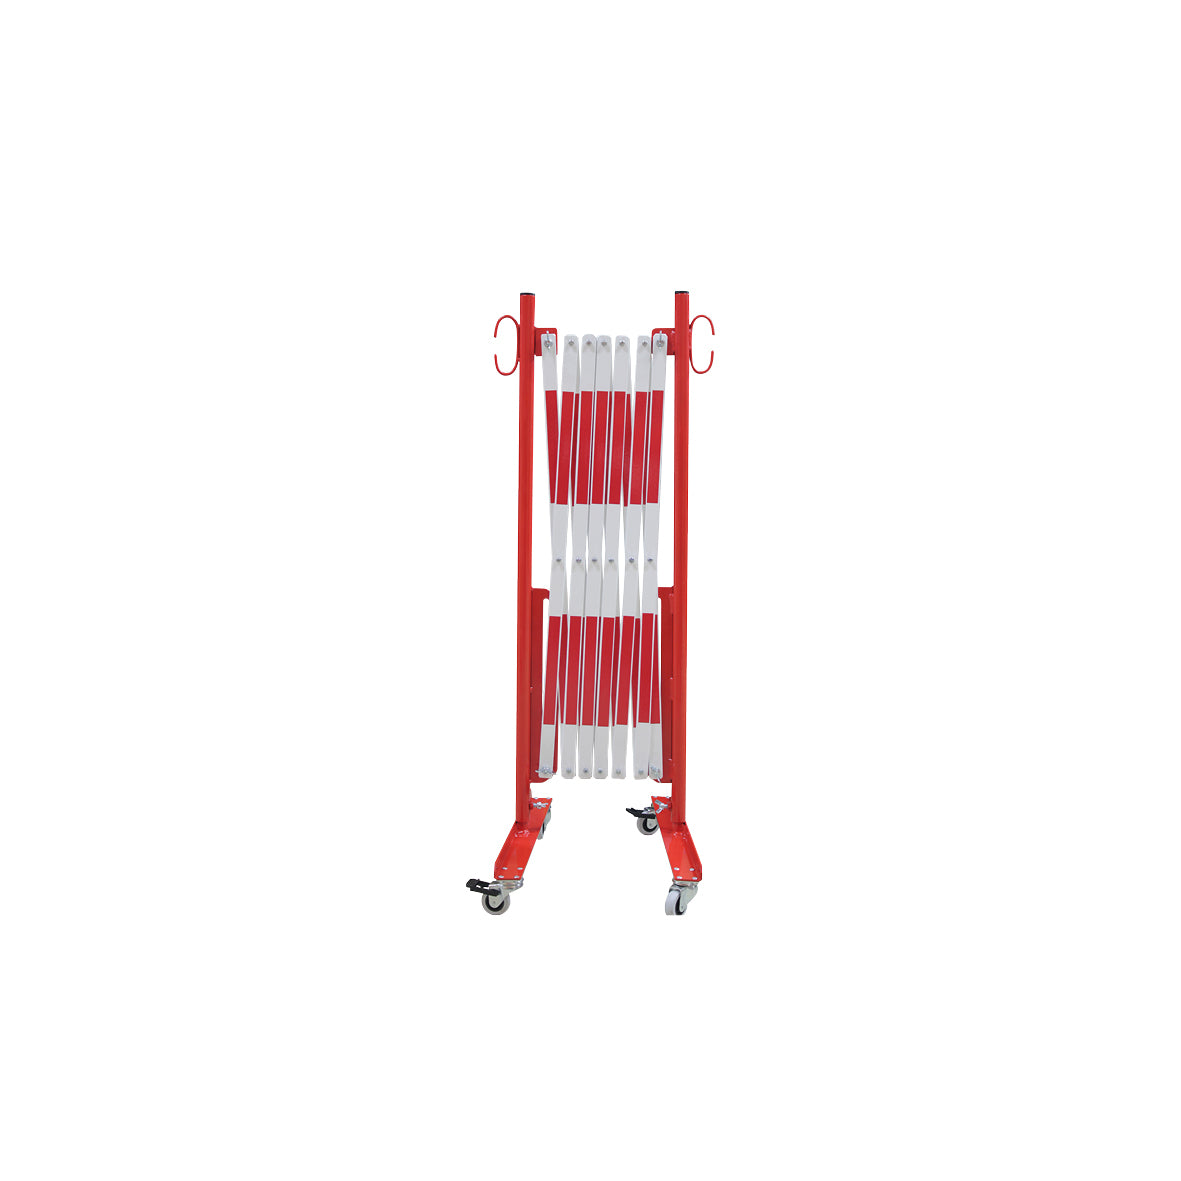 Scherensperre mit Rollen, Stahl, rot-weiss lackiert, Max. Breite 3.6 m. Gewicht: 12 kg, B/H/T: 380 x 950 x 450 mm, zusammengeklappt